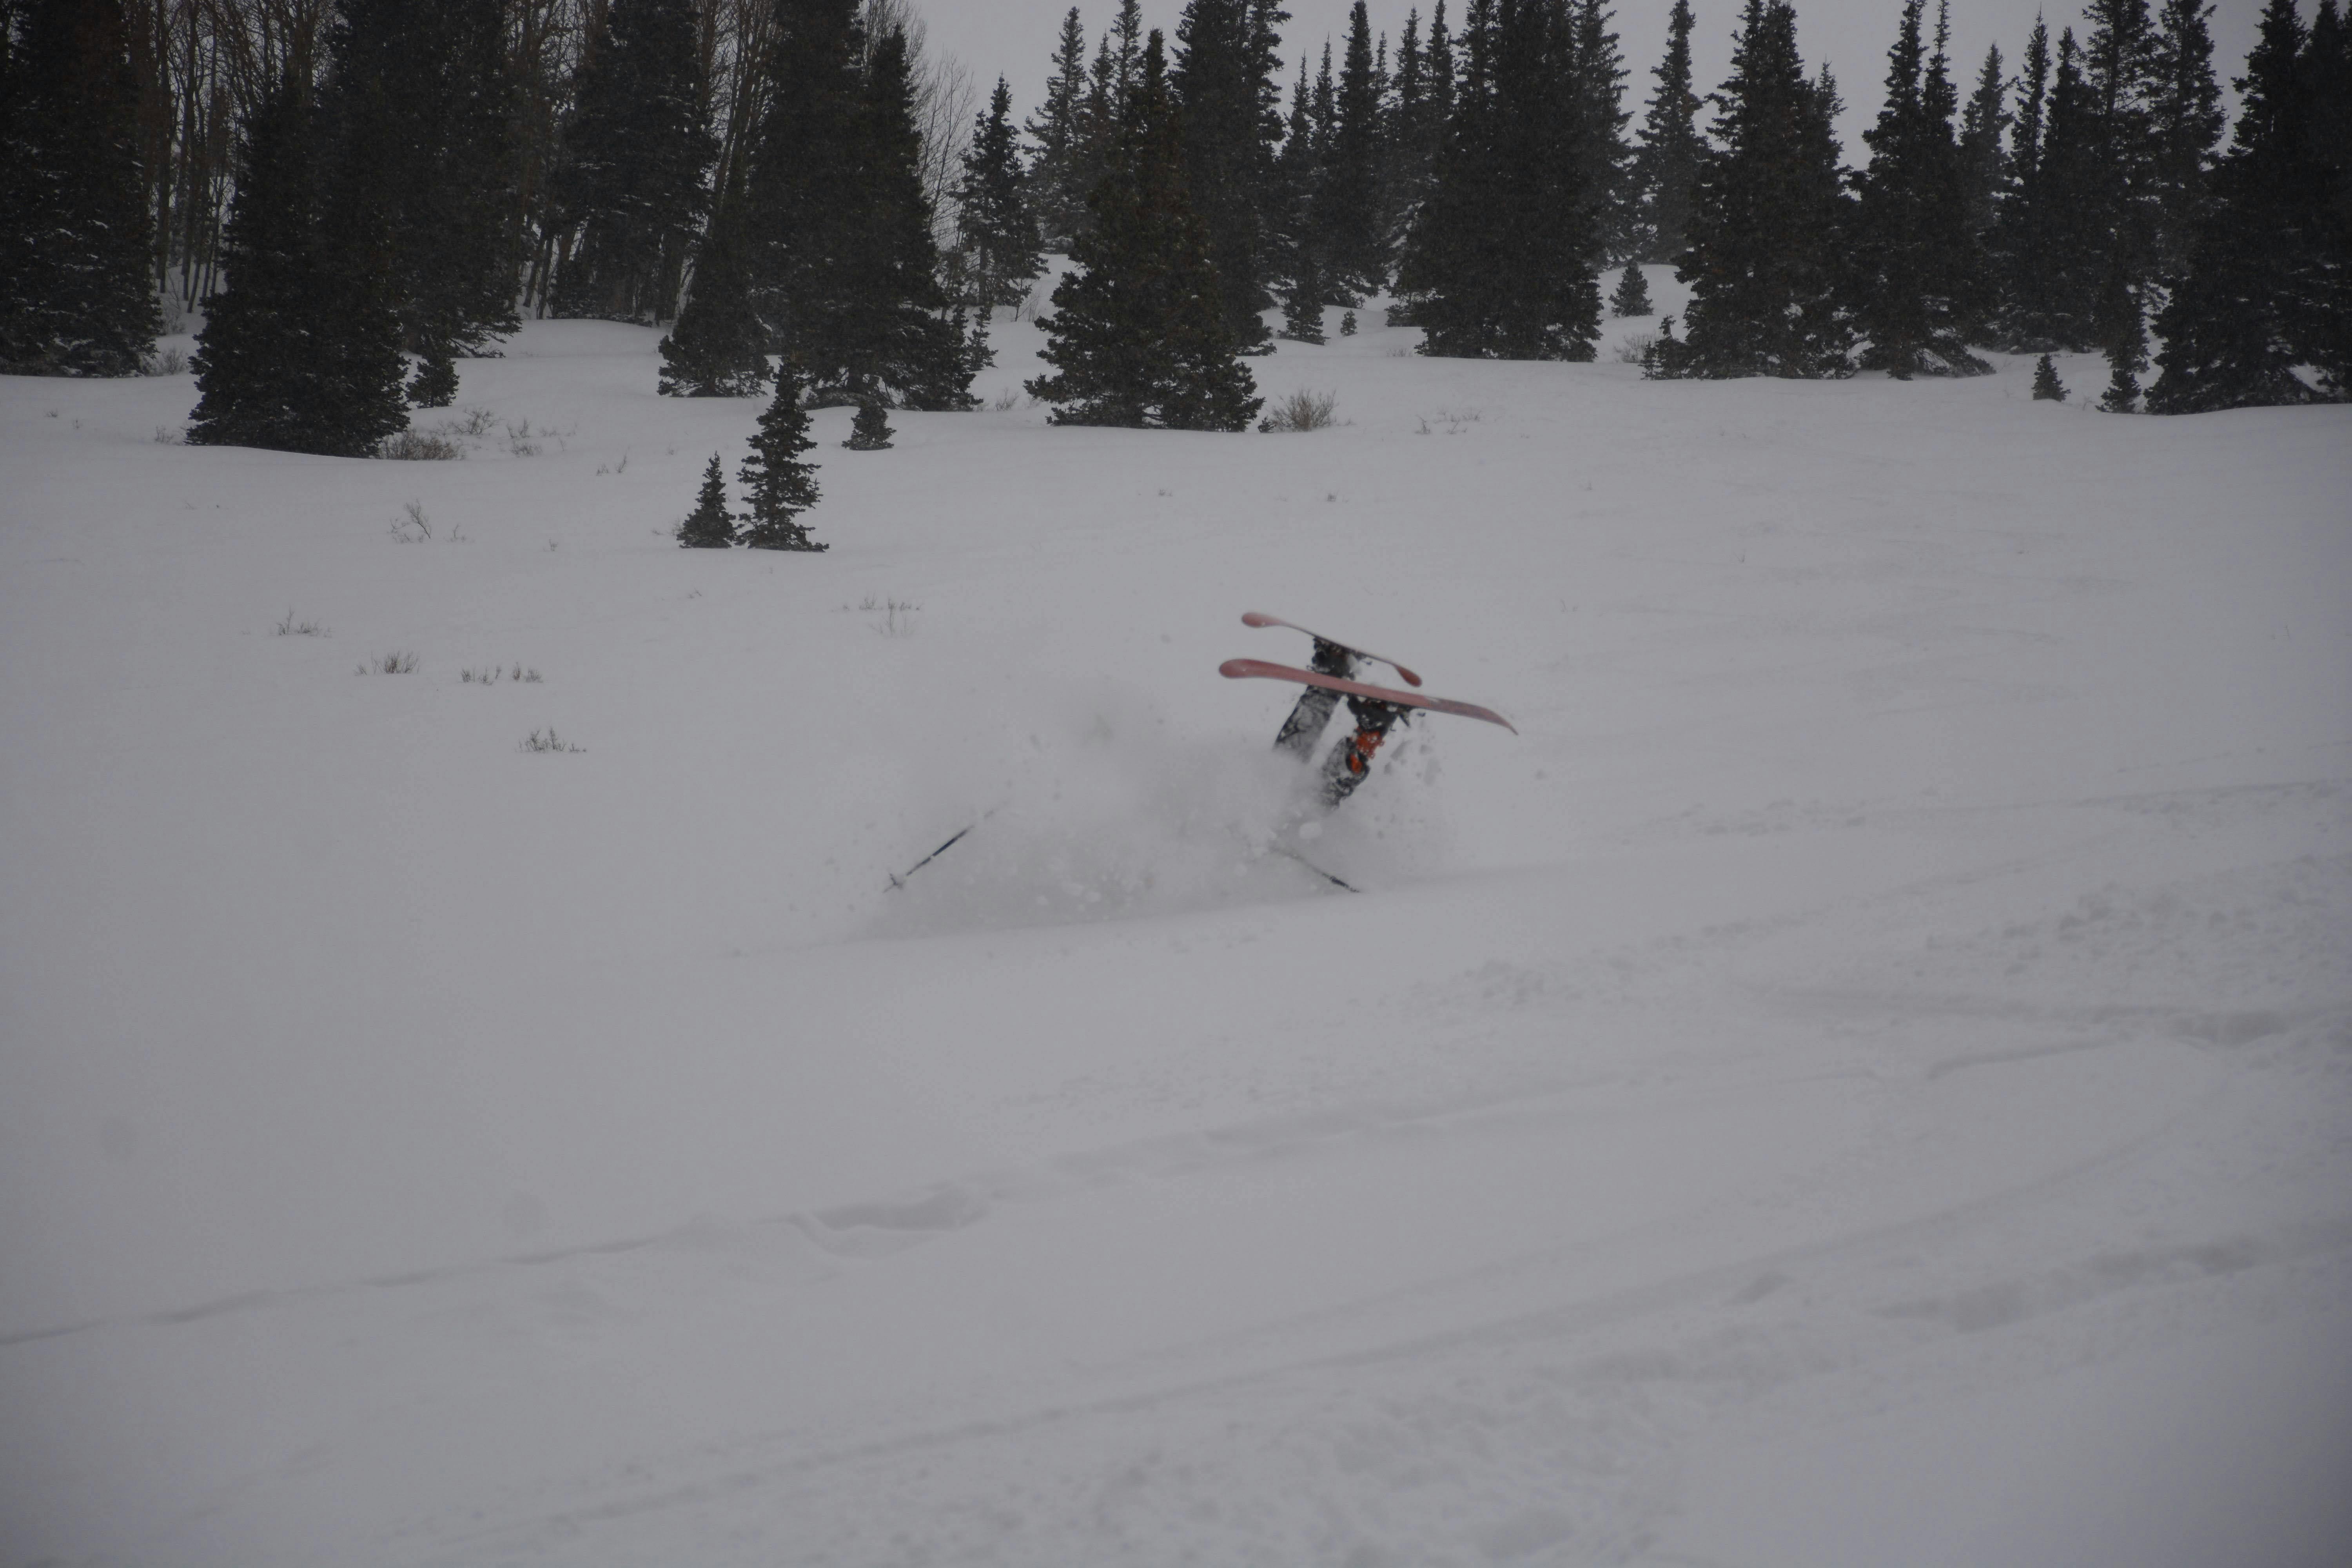 A skier turning down a snowy run.
